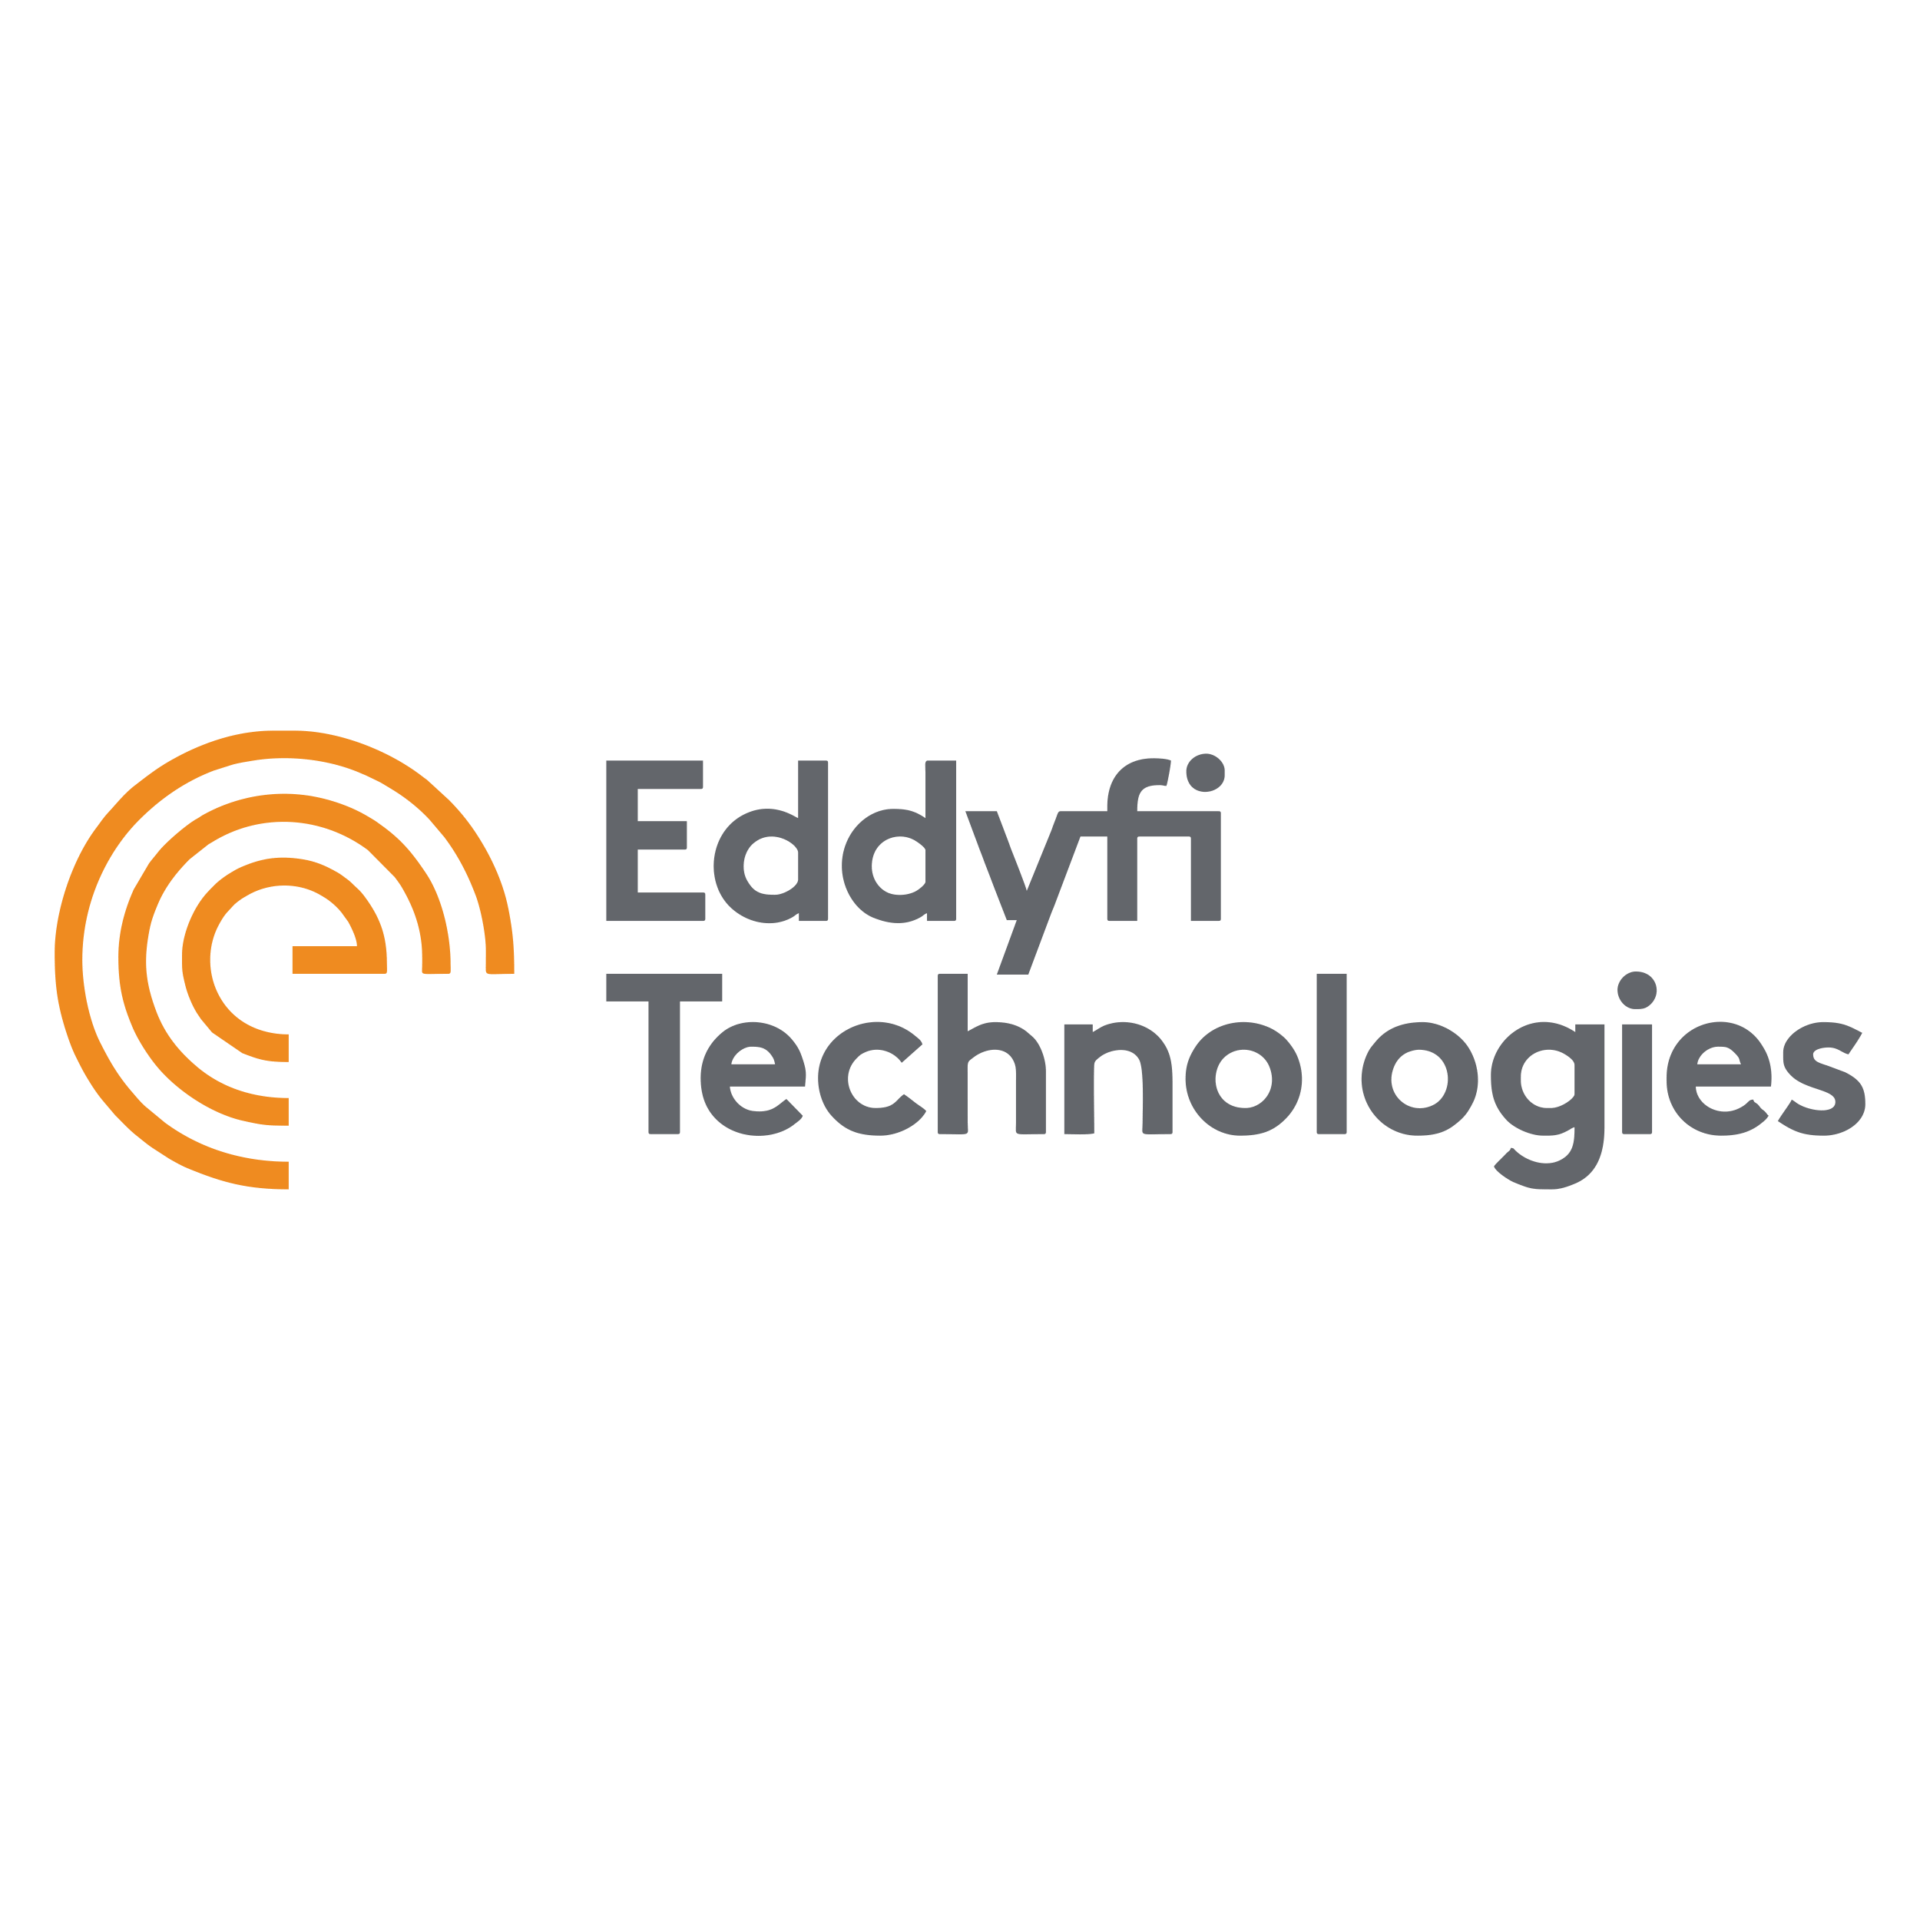 eddyfi Technologies logo